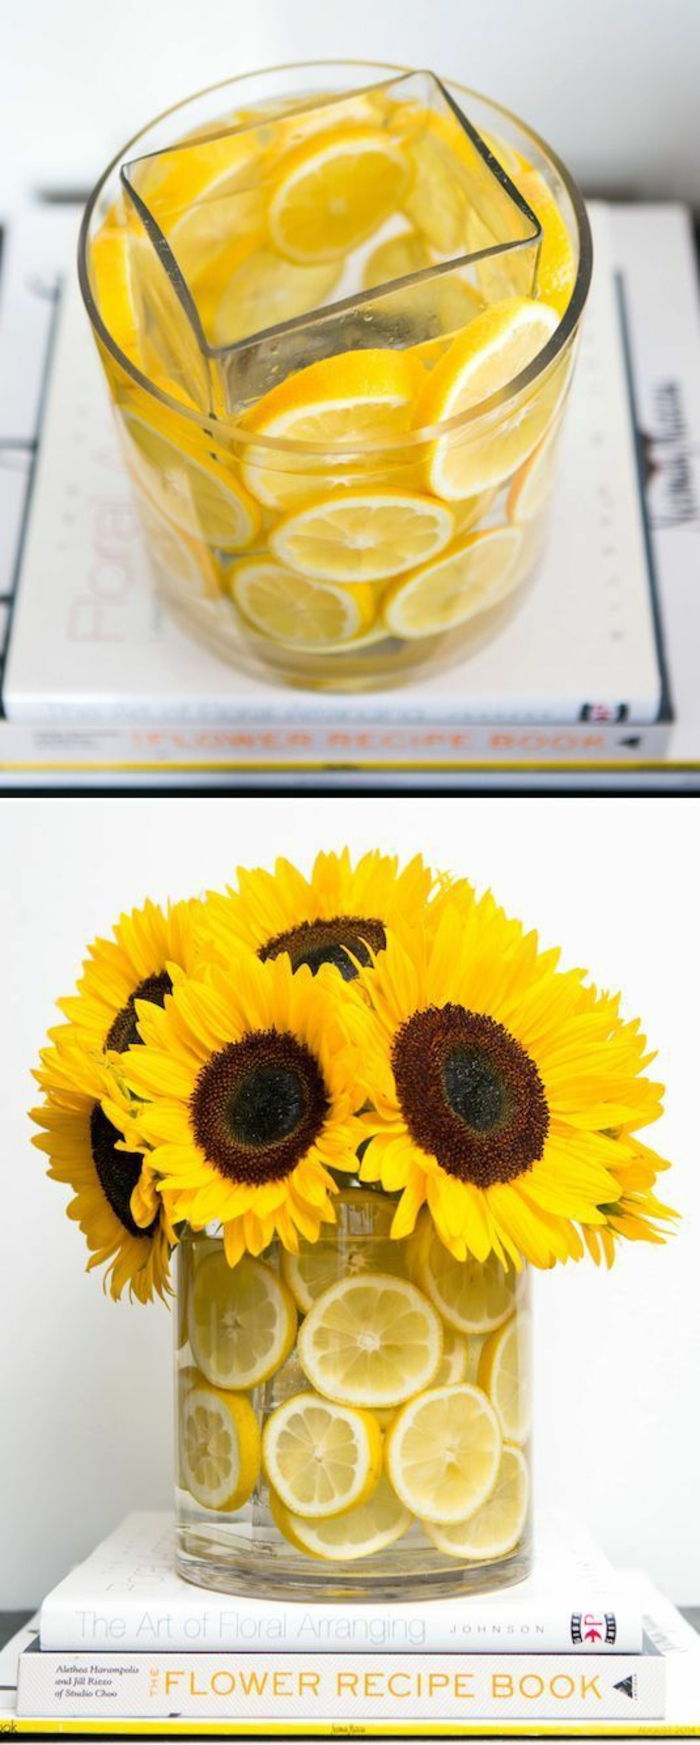 Sklenená váza zdobená citrónovou kôrou, žltými kvetmi, slnečnicami